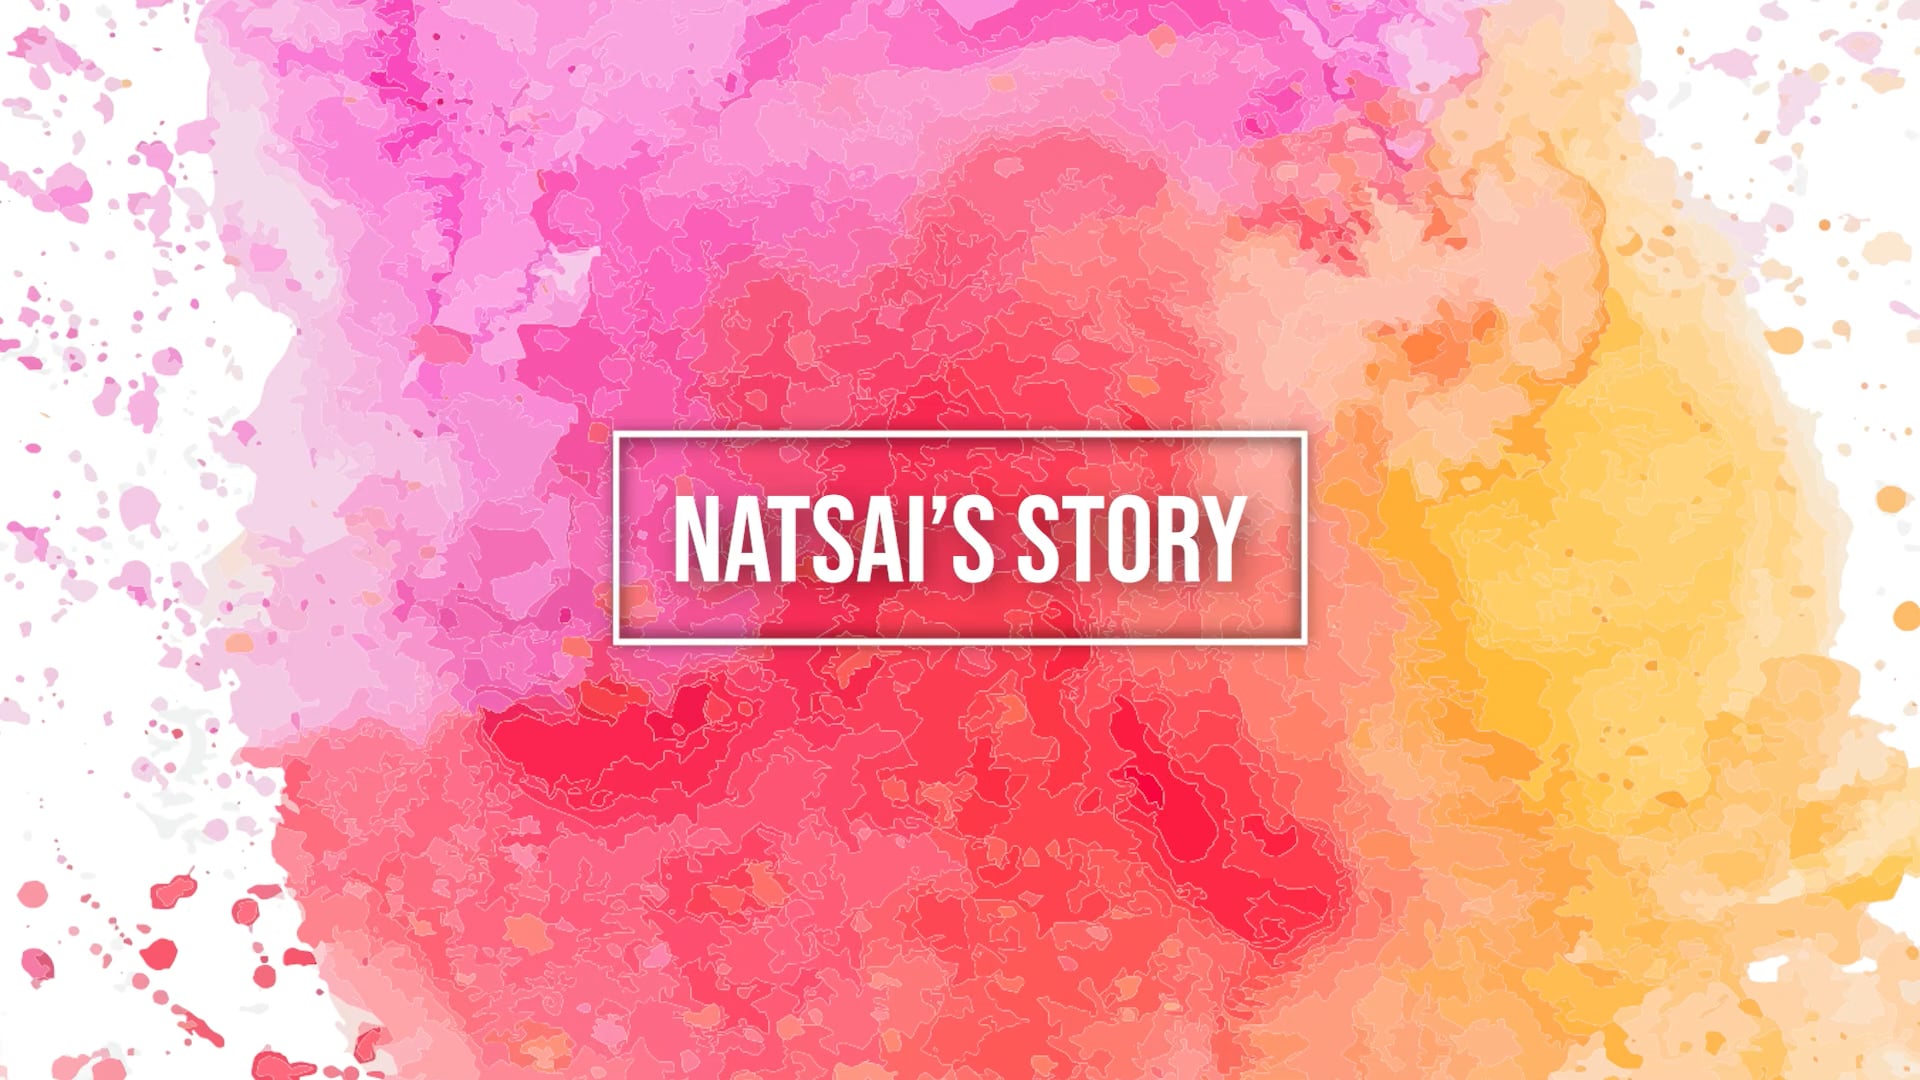 Natsai's Story